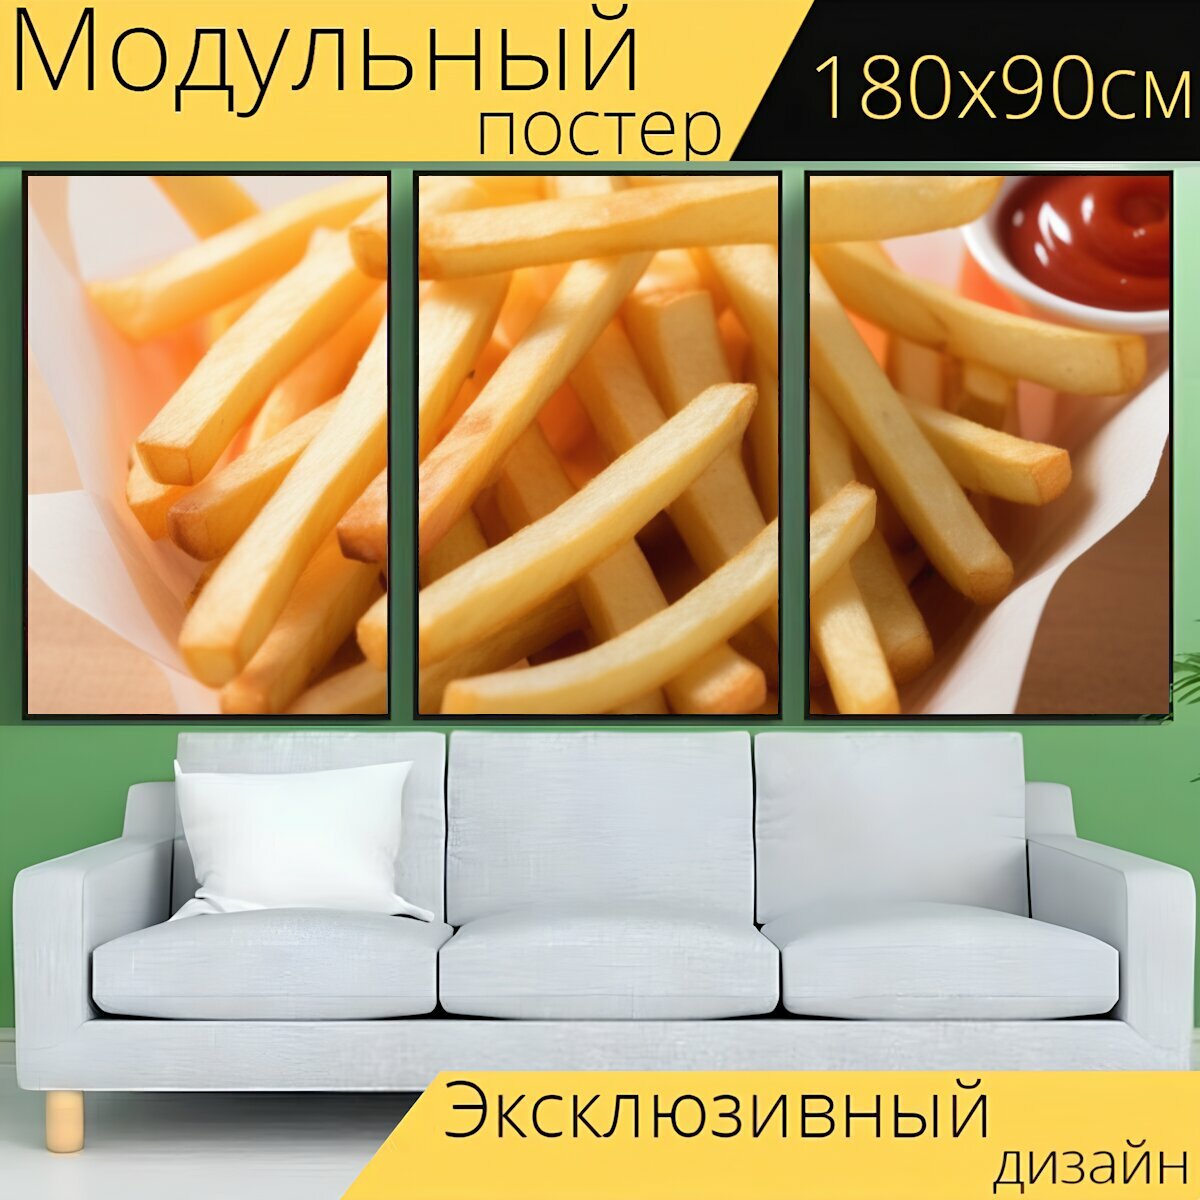 Модульный постер любителям полезного "Овощи, картофель, фаст-фуд " 180 x 90 см. для интерьера на стену